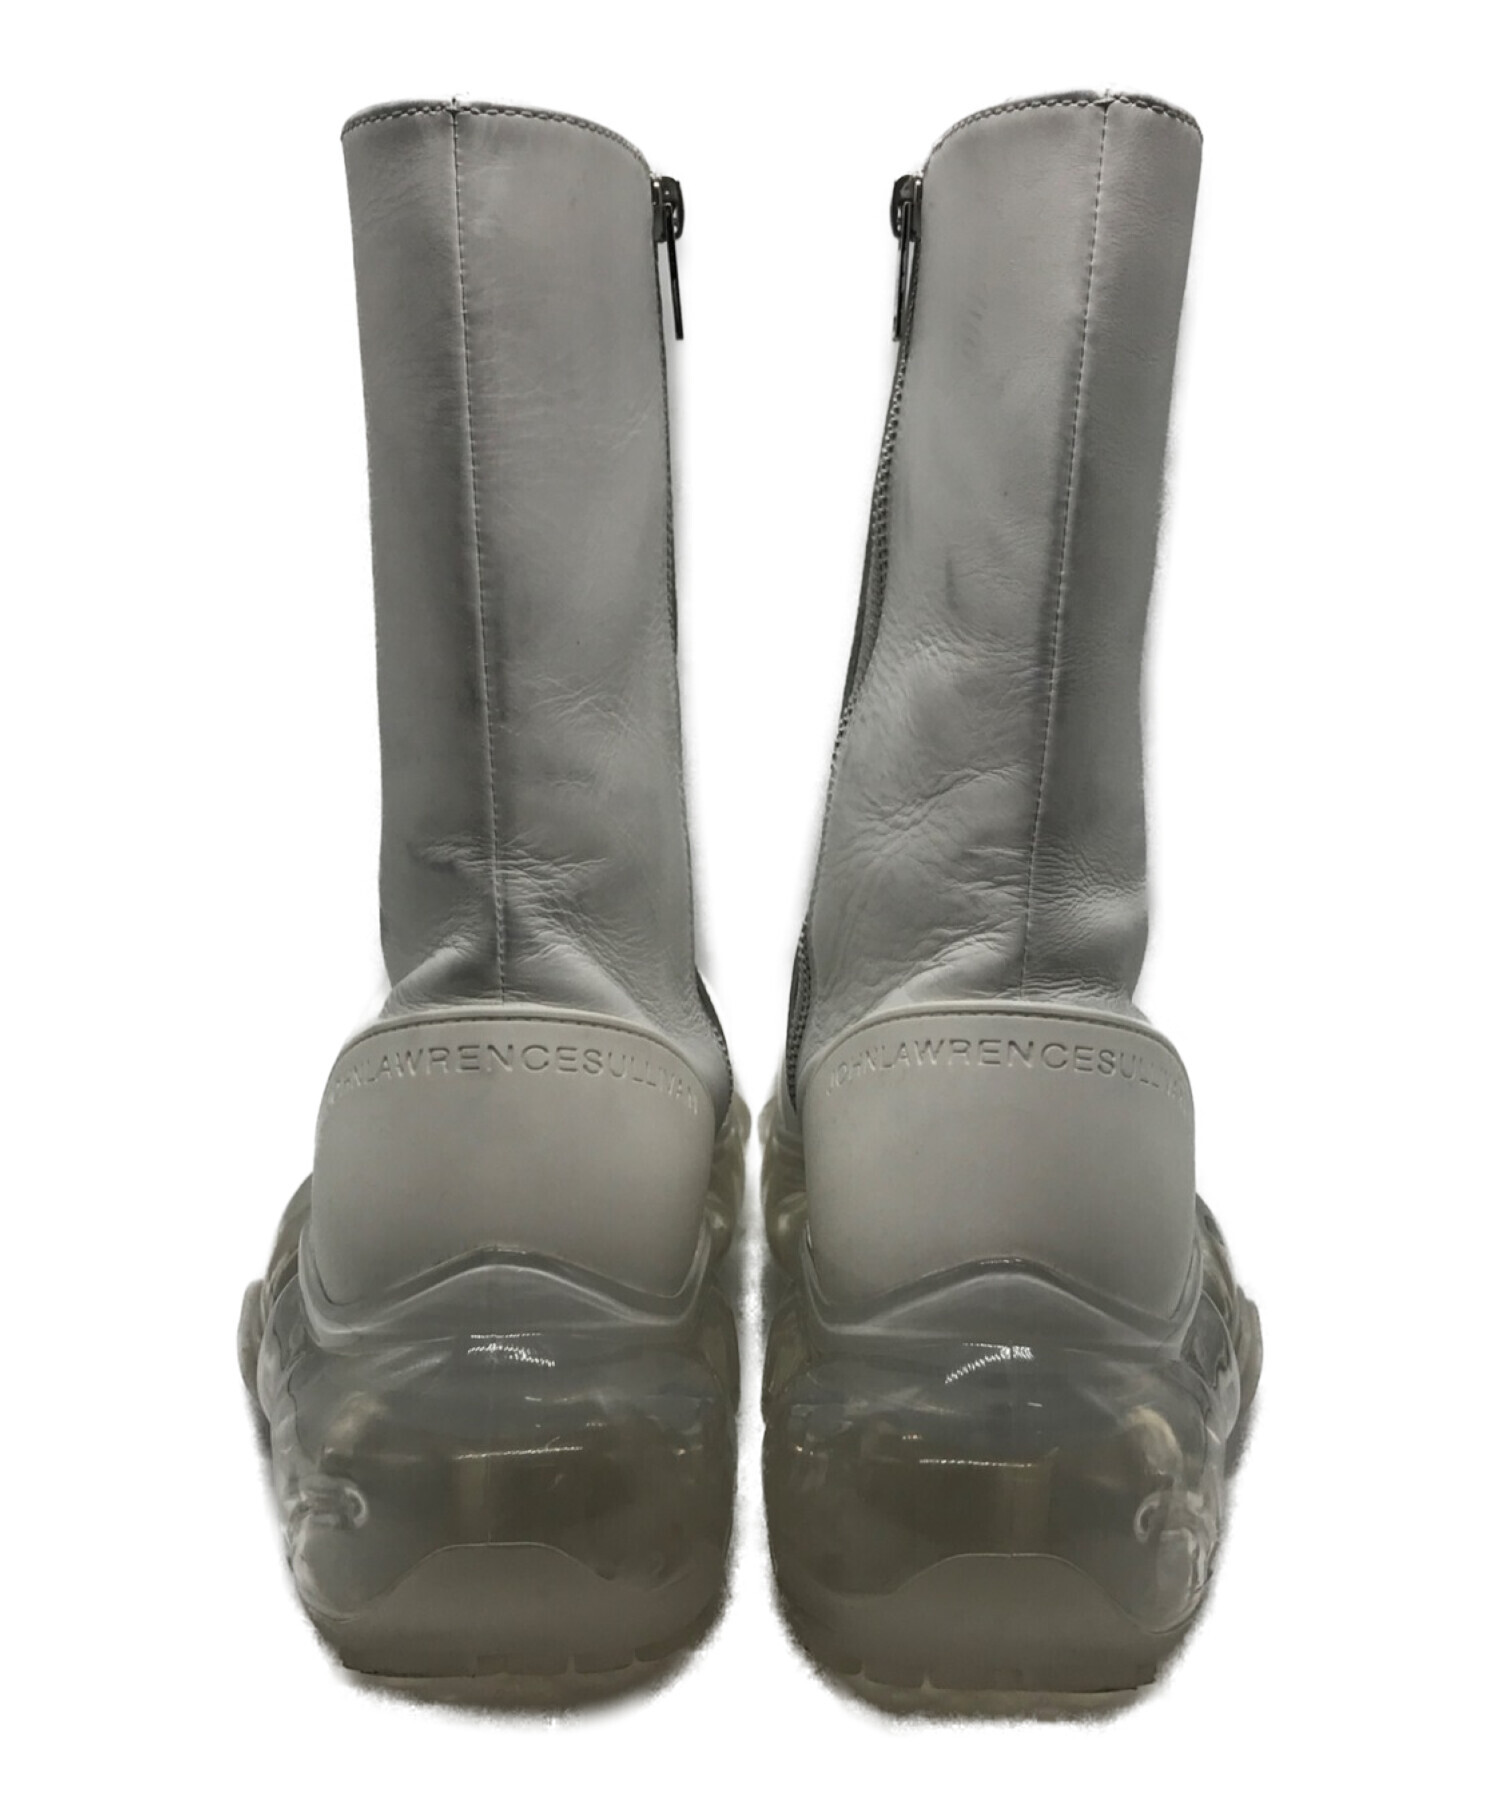 JOHN LAWRENCE SULLIVAN (ジョンローレンスサリバン) grounds (グラウンズ) moopie leather boots  ホワイト サイズ:26cm